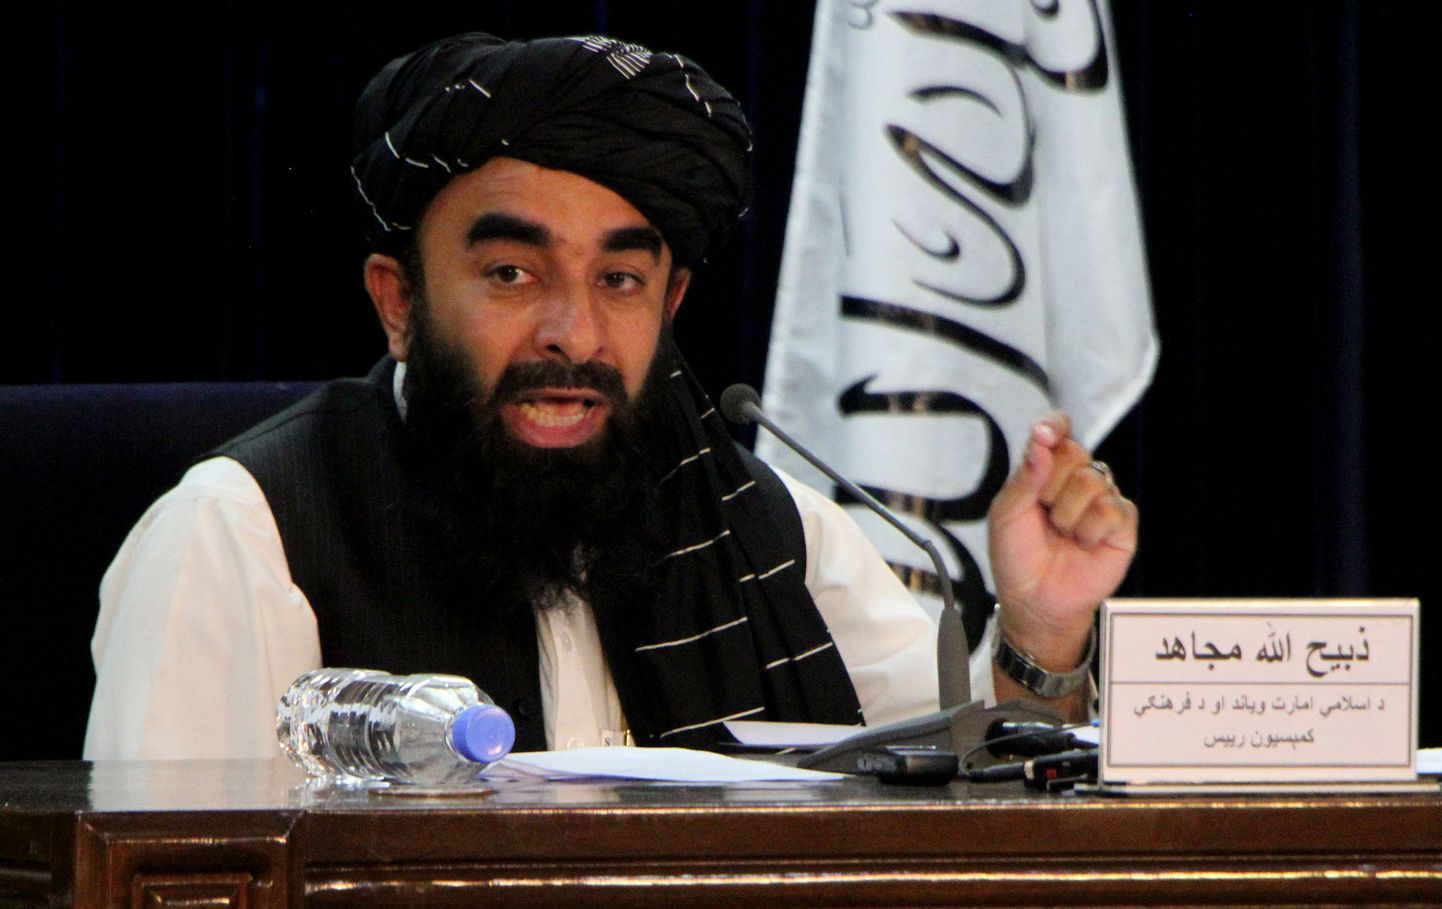 Talibani kõneisik Zabihullah Mujahid.